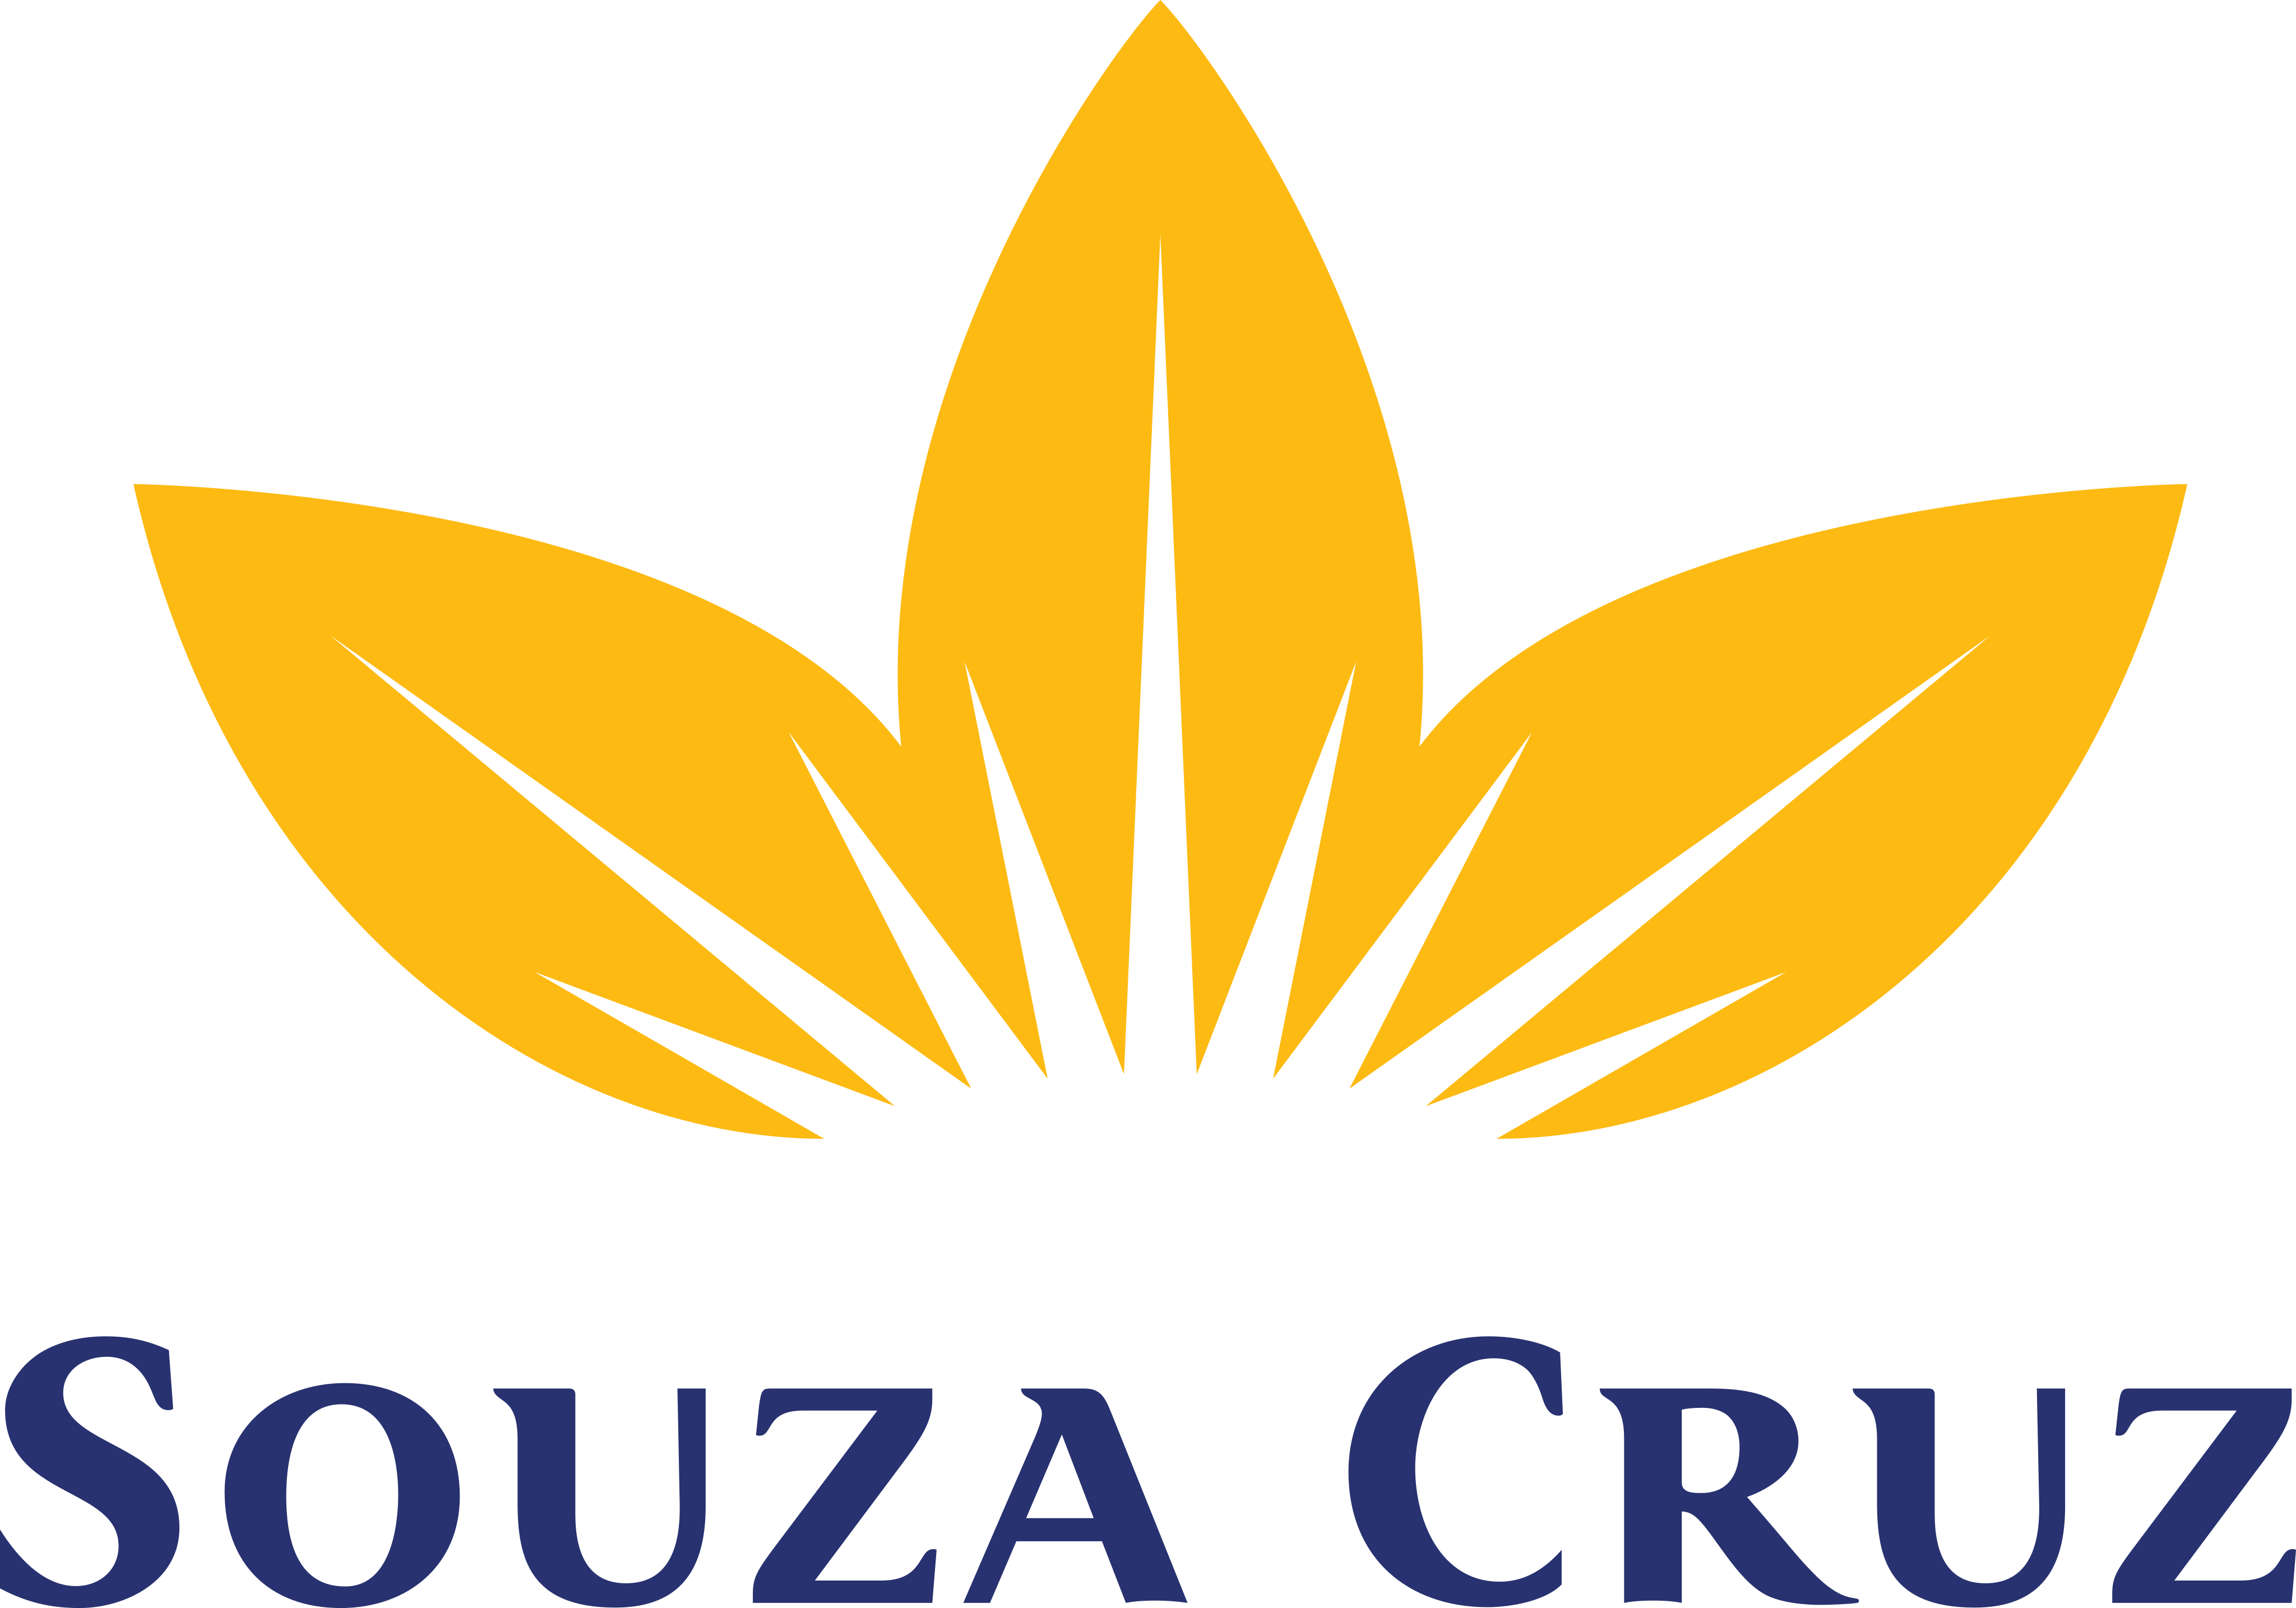 Souza Cruz Logo.